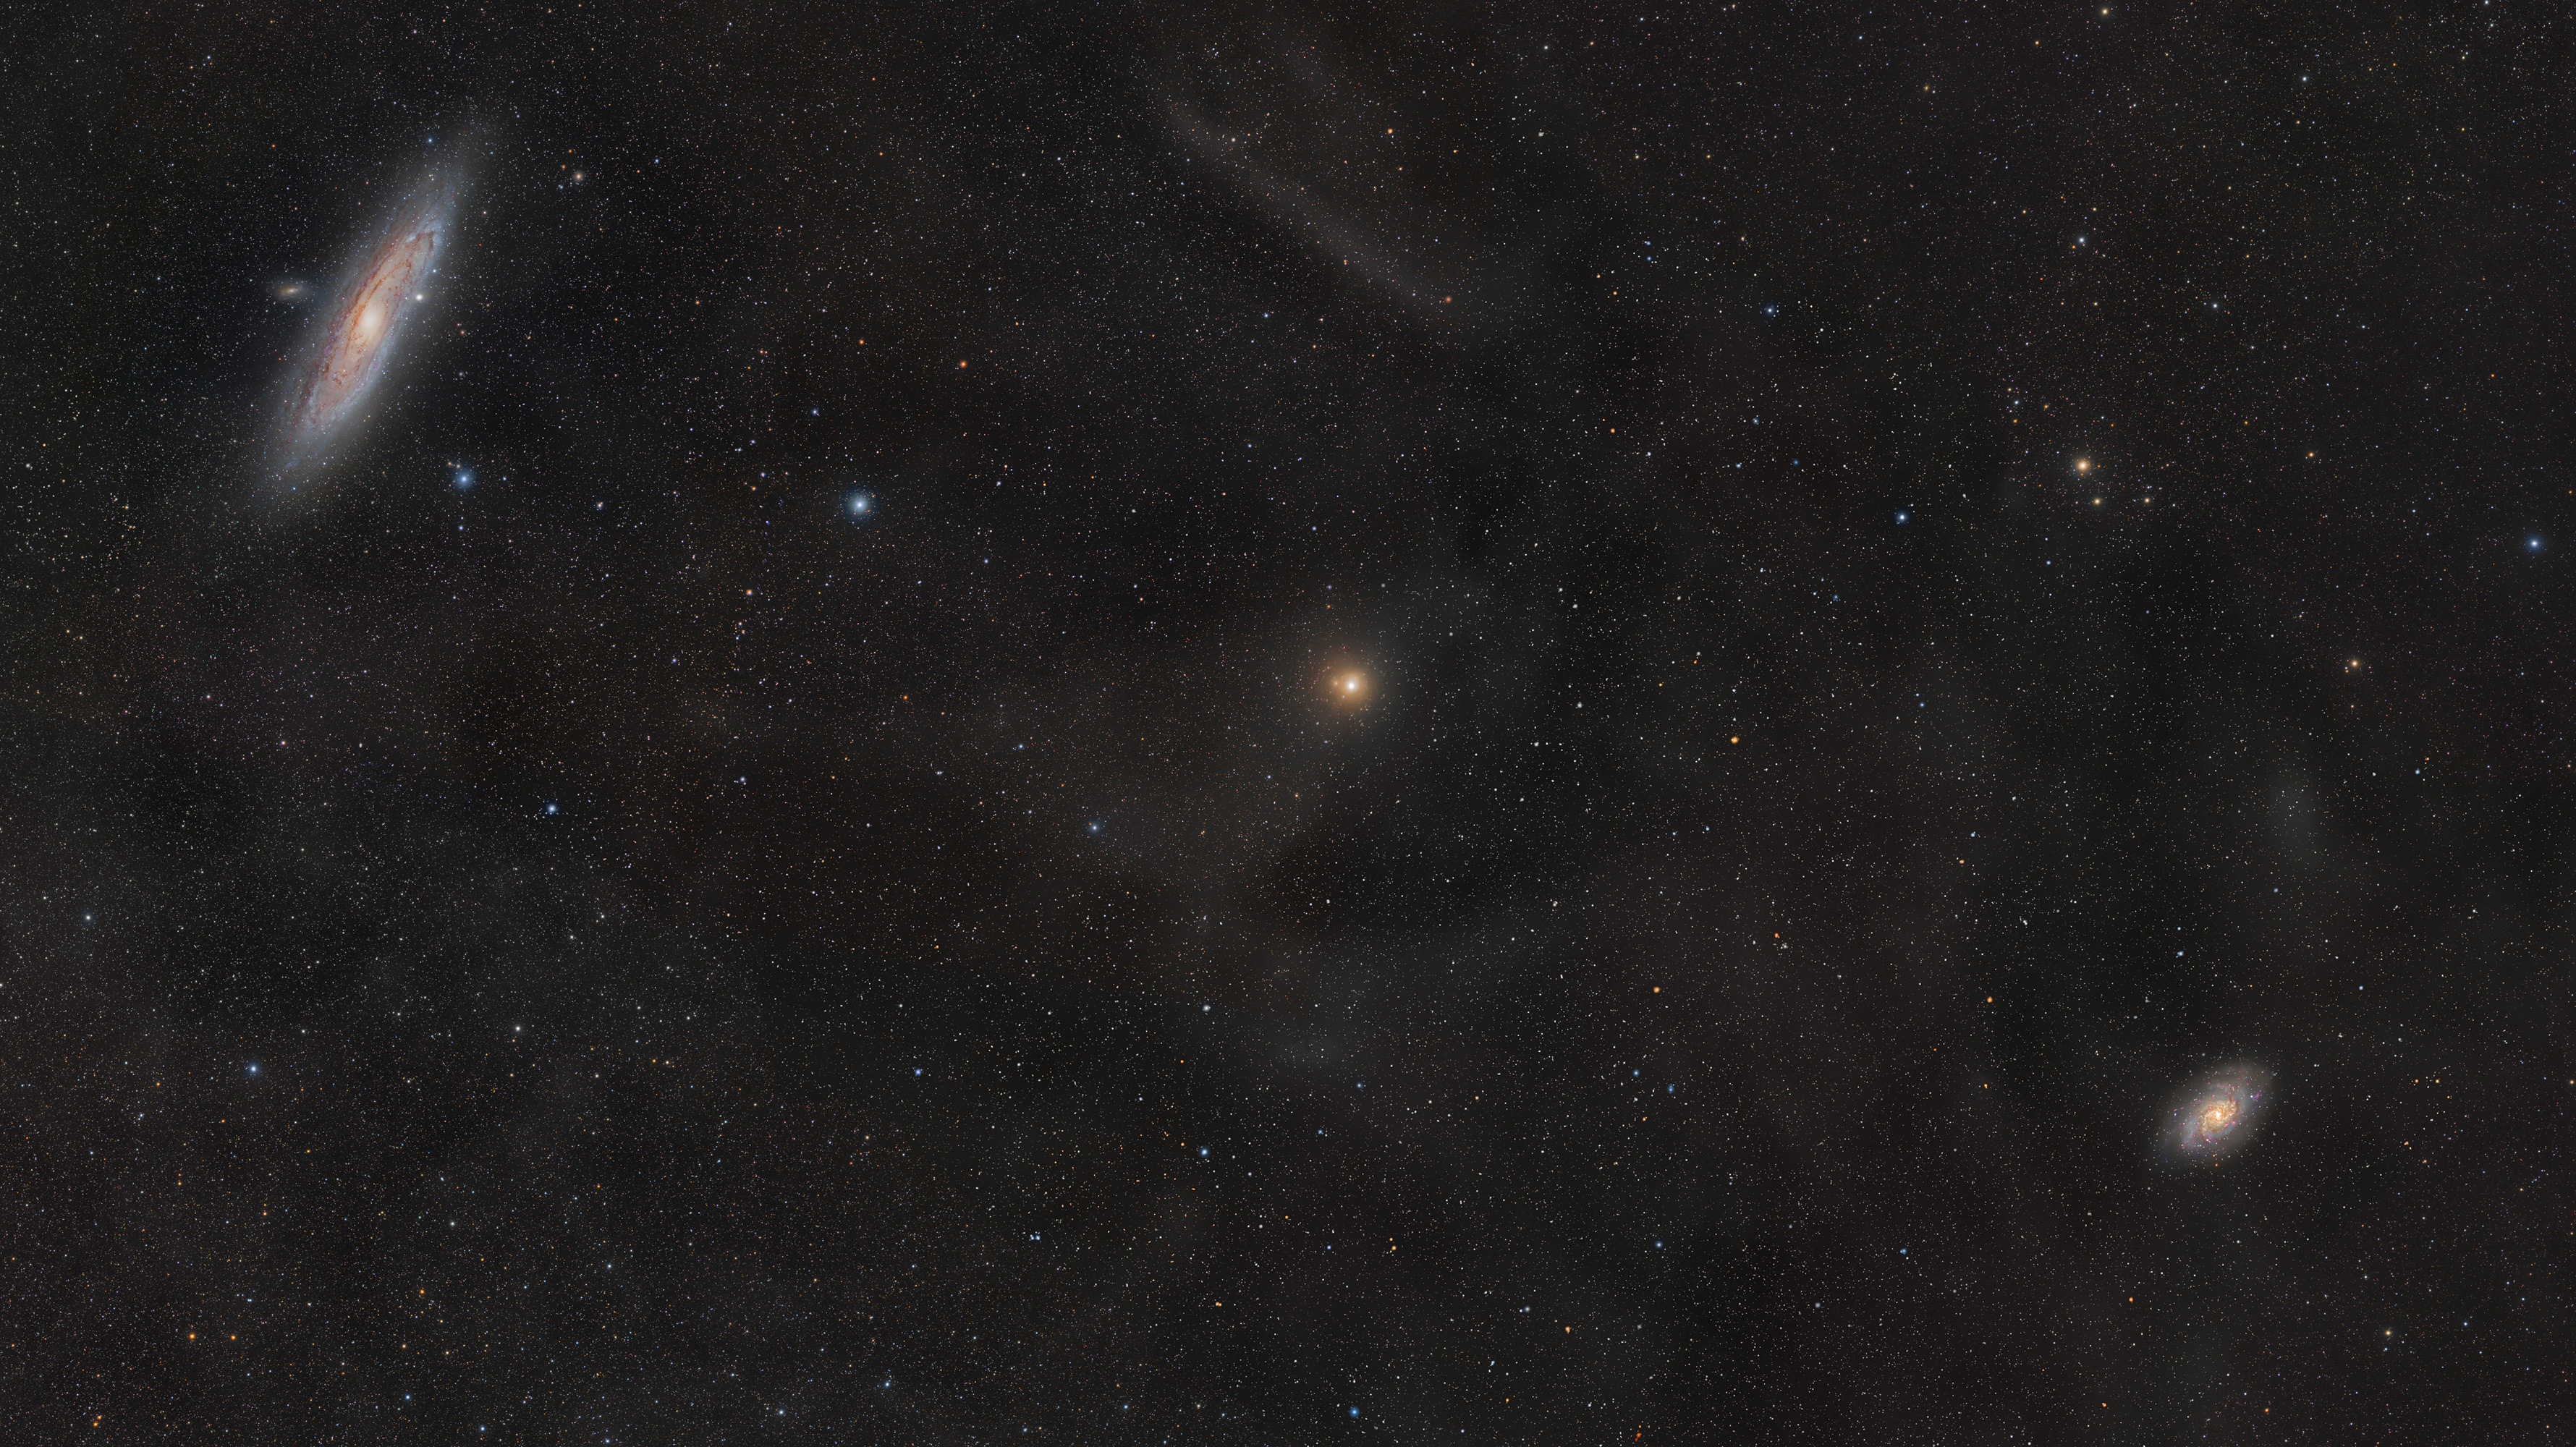 Https m 31. M33 Галактика невооруженным глазом. Галактика м33 и м31. Туманность Андромеды m31. Галактика м 31 на небе.